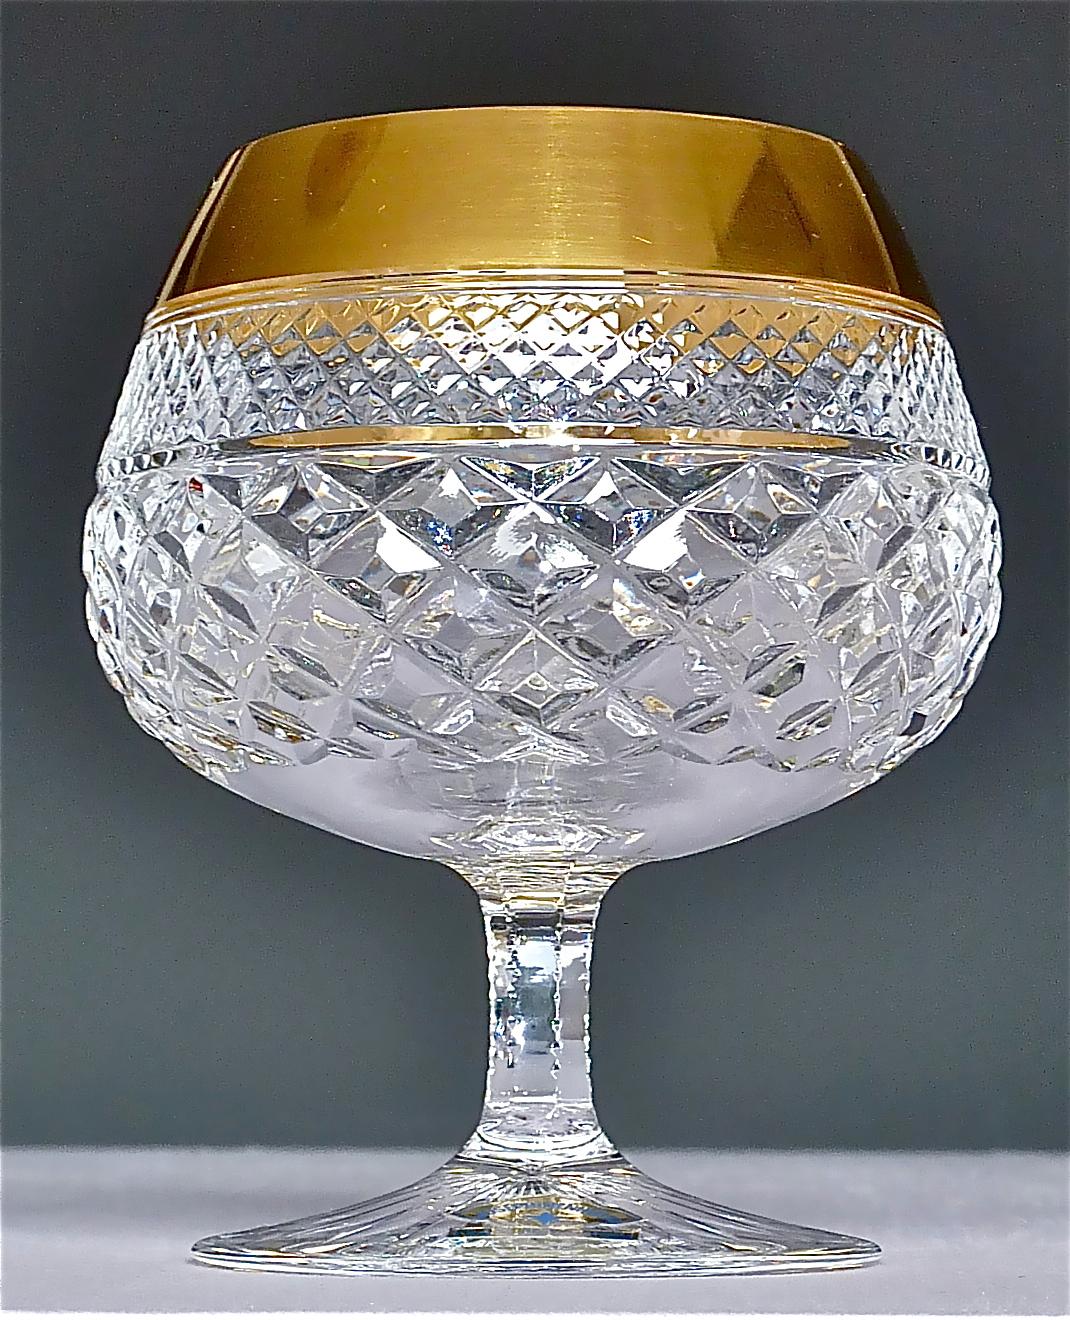 Precious 6 Cognac Glasses Gold Crystal Glass Stemware Josephinenhuette Moser 4